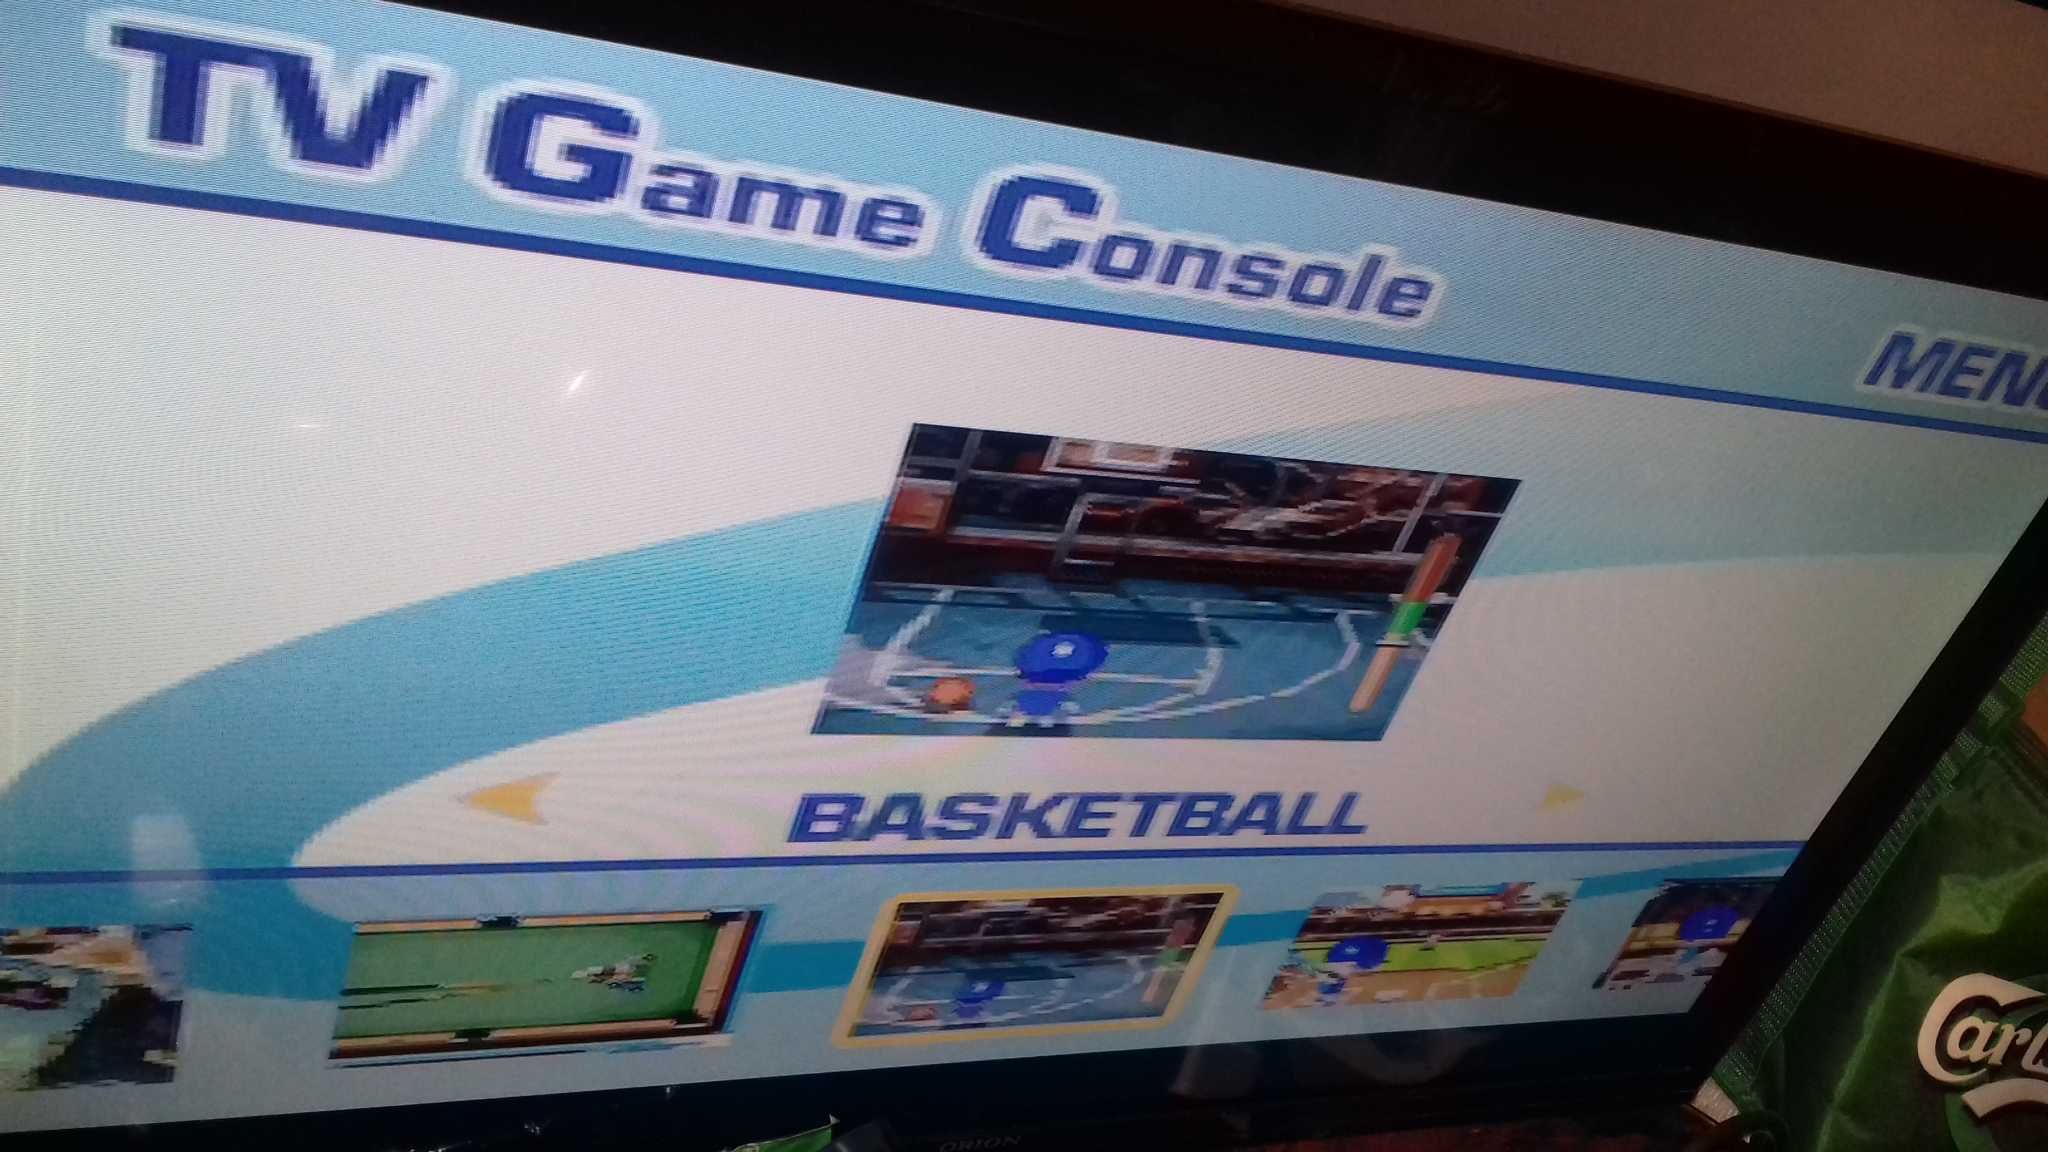 Consola cu jocuri pe TV LEXIBOOK JG7400/JG7410